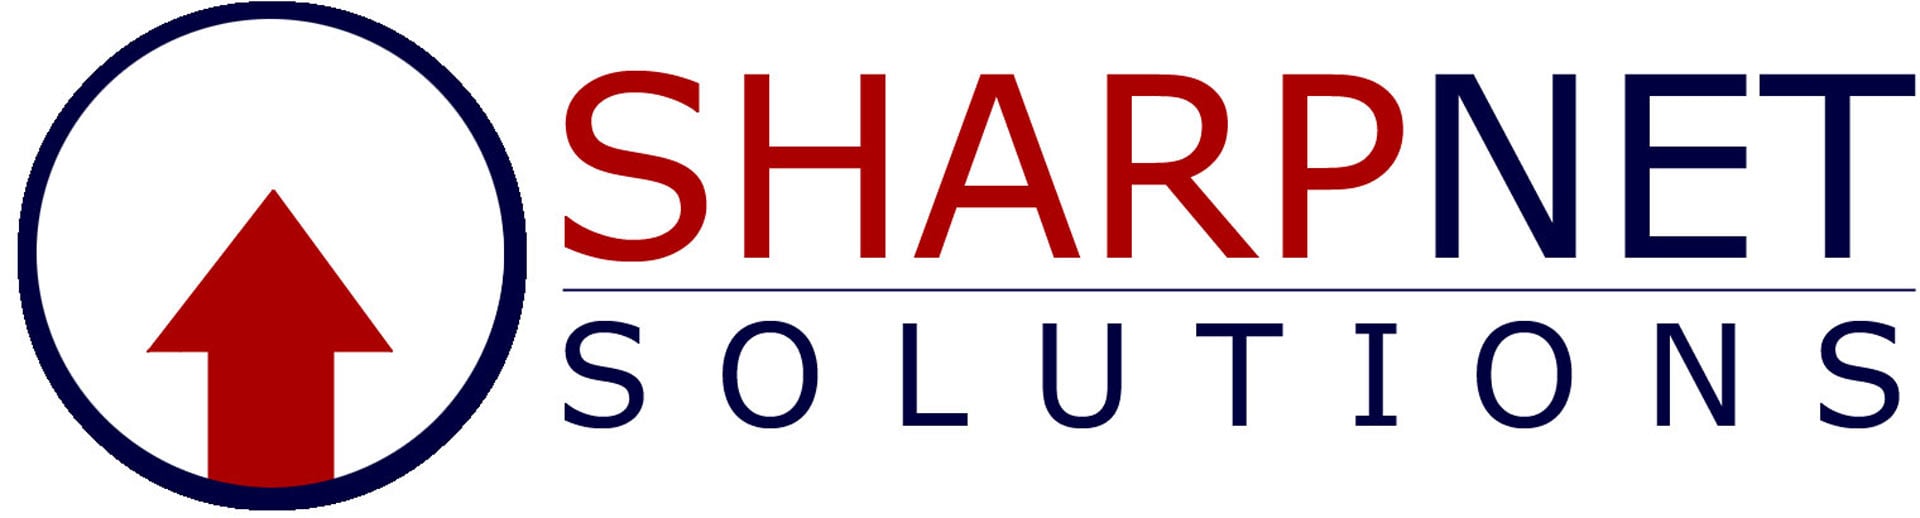 Top Social Media Marketing Business Logo: SharpNet